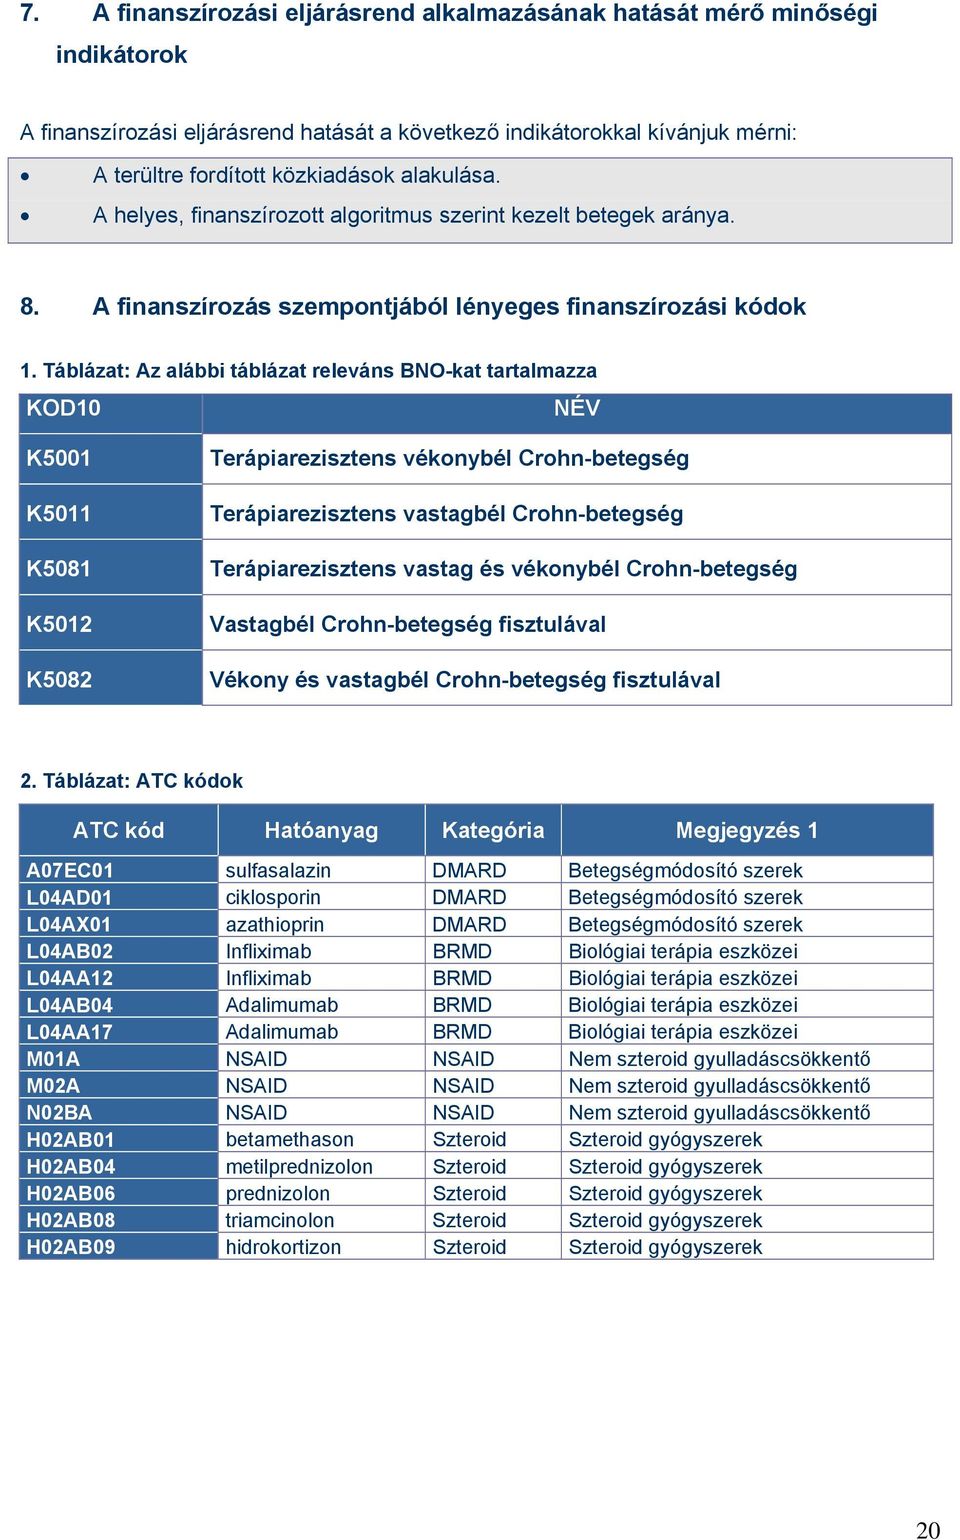 Táblázat: Az alábbi táblázat releváns BNO-kat tartalmazza KOD10 NÉV K5001 K5011 K5081 K5012 K5082 Terápiarezisztens vékonybél Crohn-betegség Terápiarezisztens vastagbél Crohn-betegség